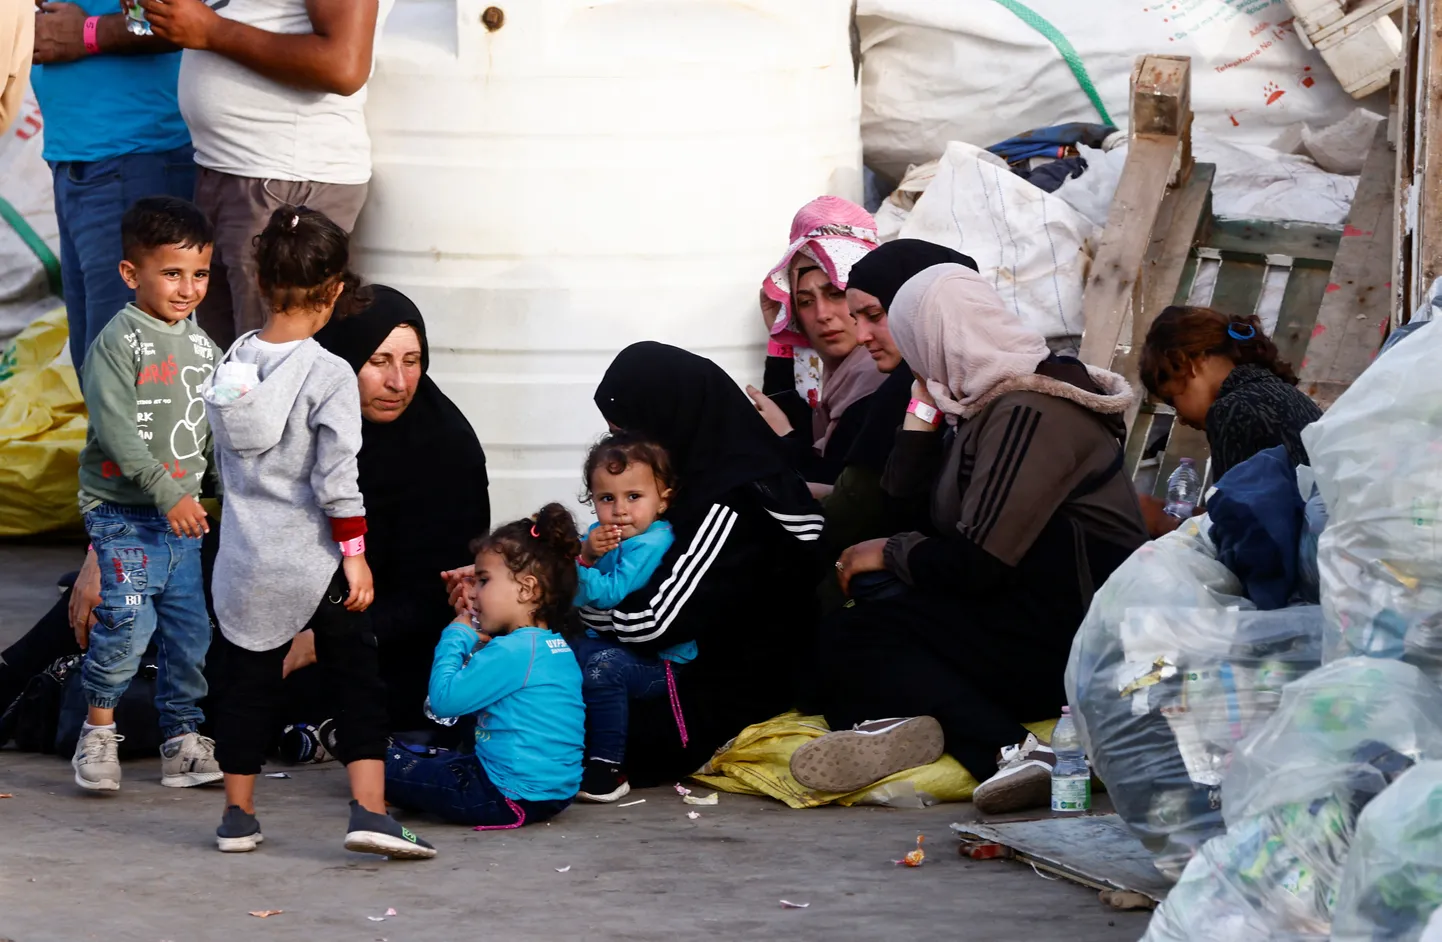 Merelt päästetud põgenikud Itaalias Lampedusa saarel septembris.